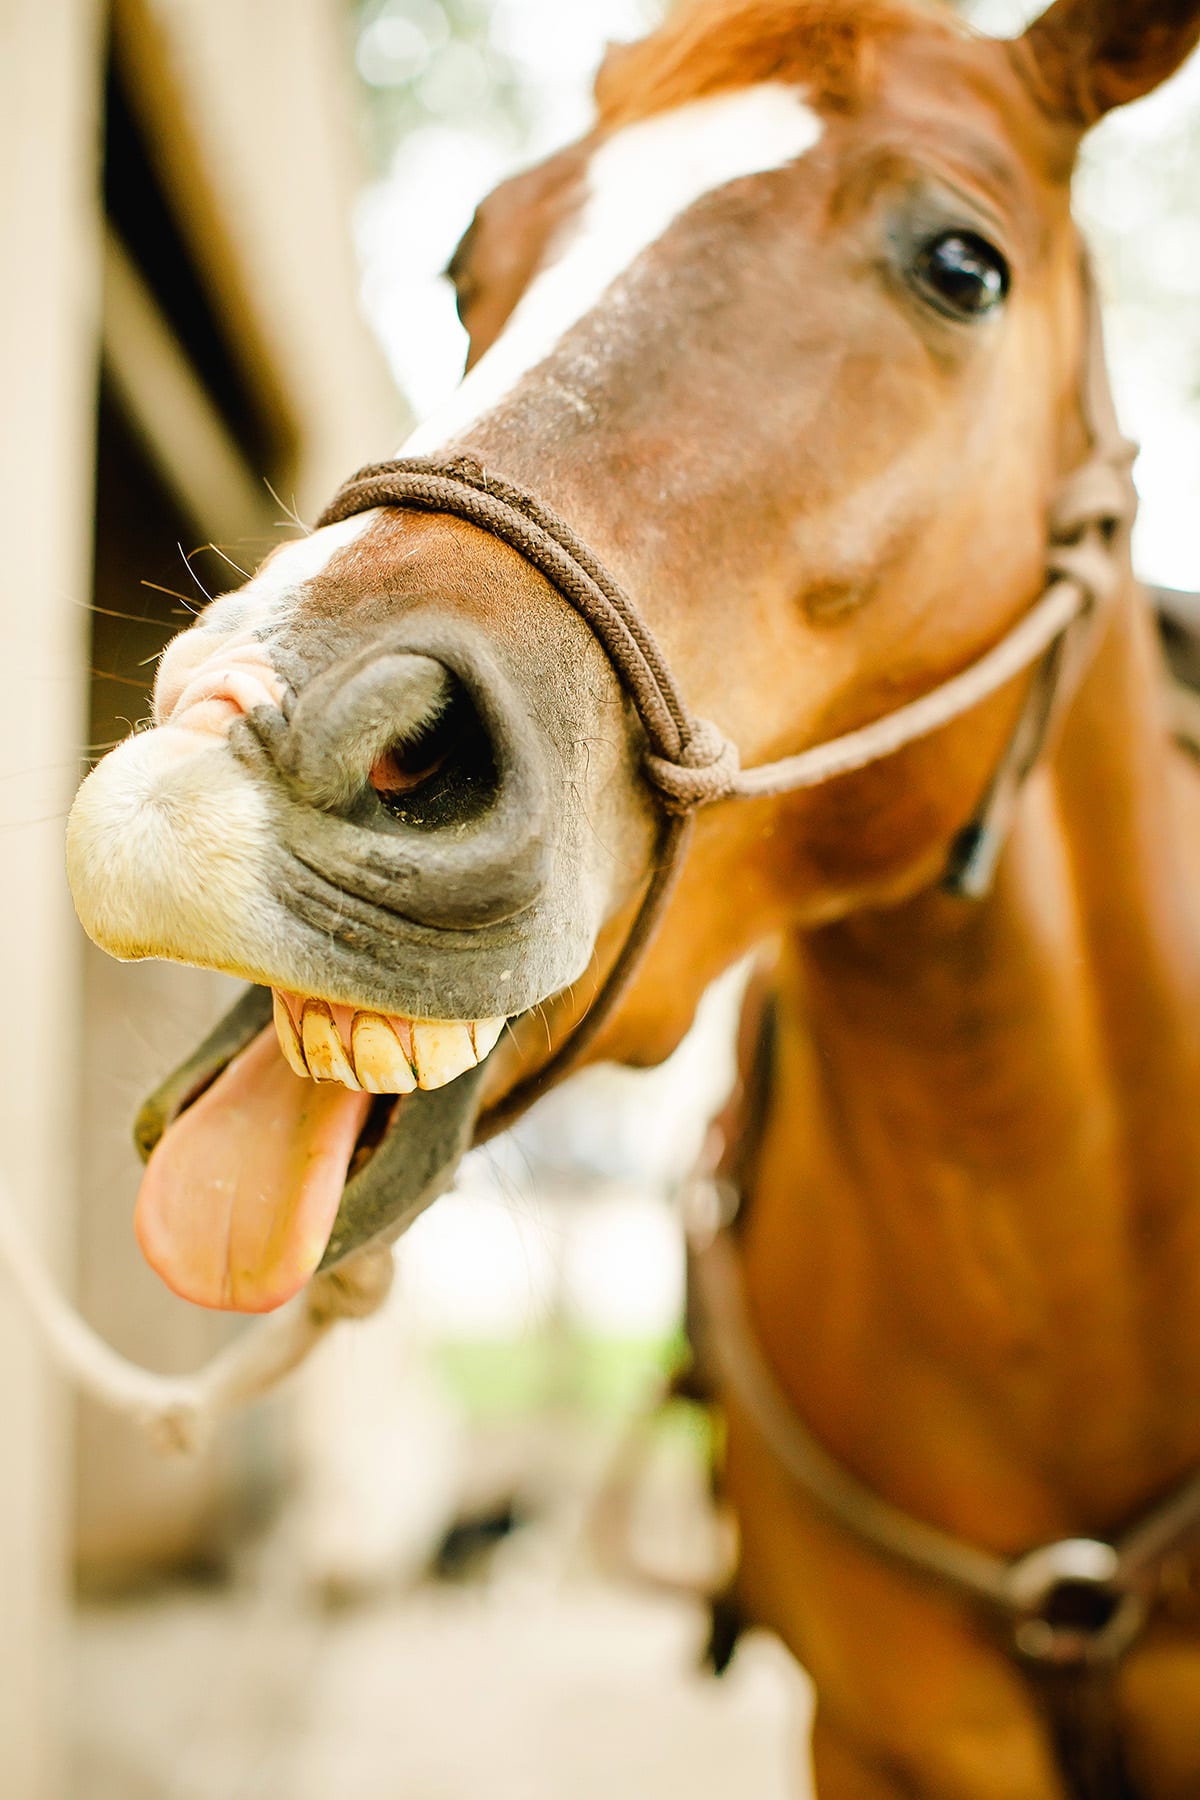 Quarter Horse yawning